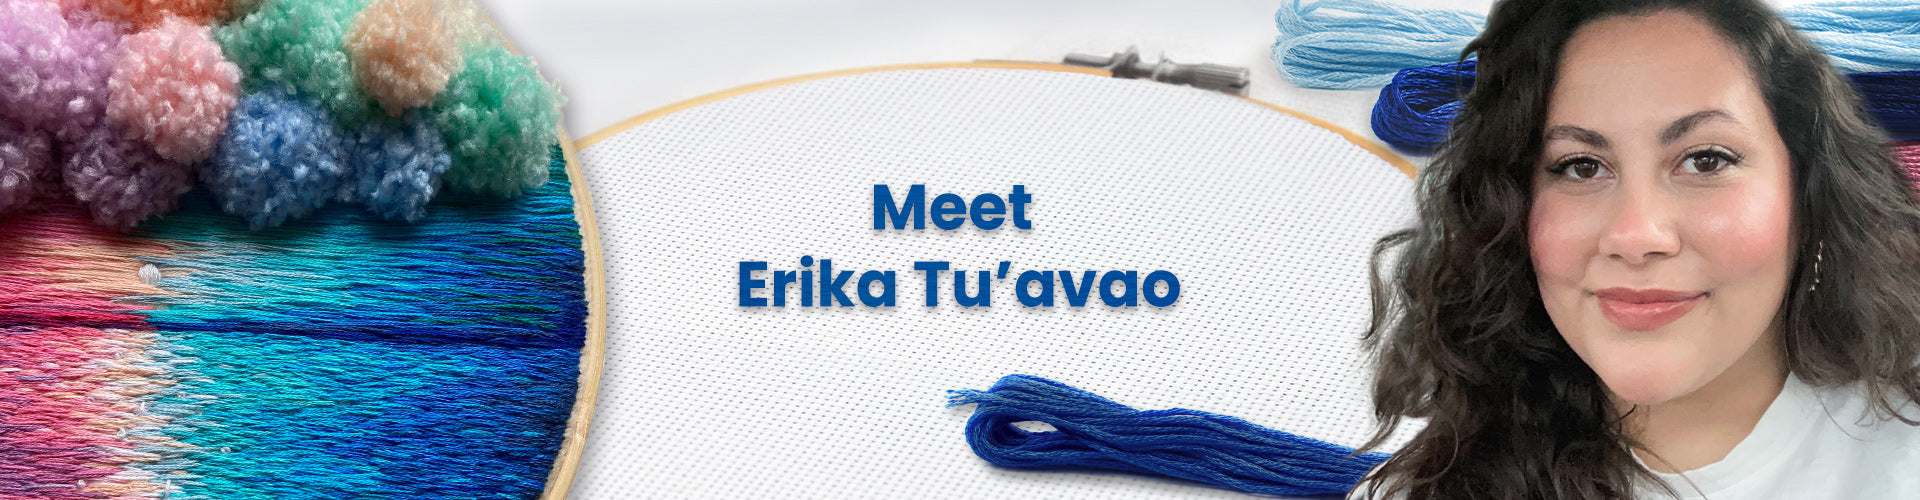 Meet Erika Tu’avao